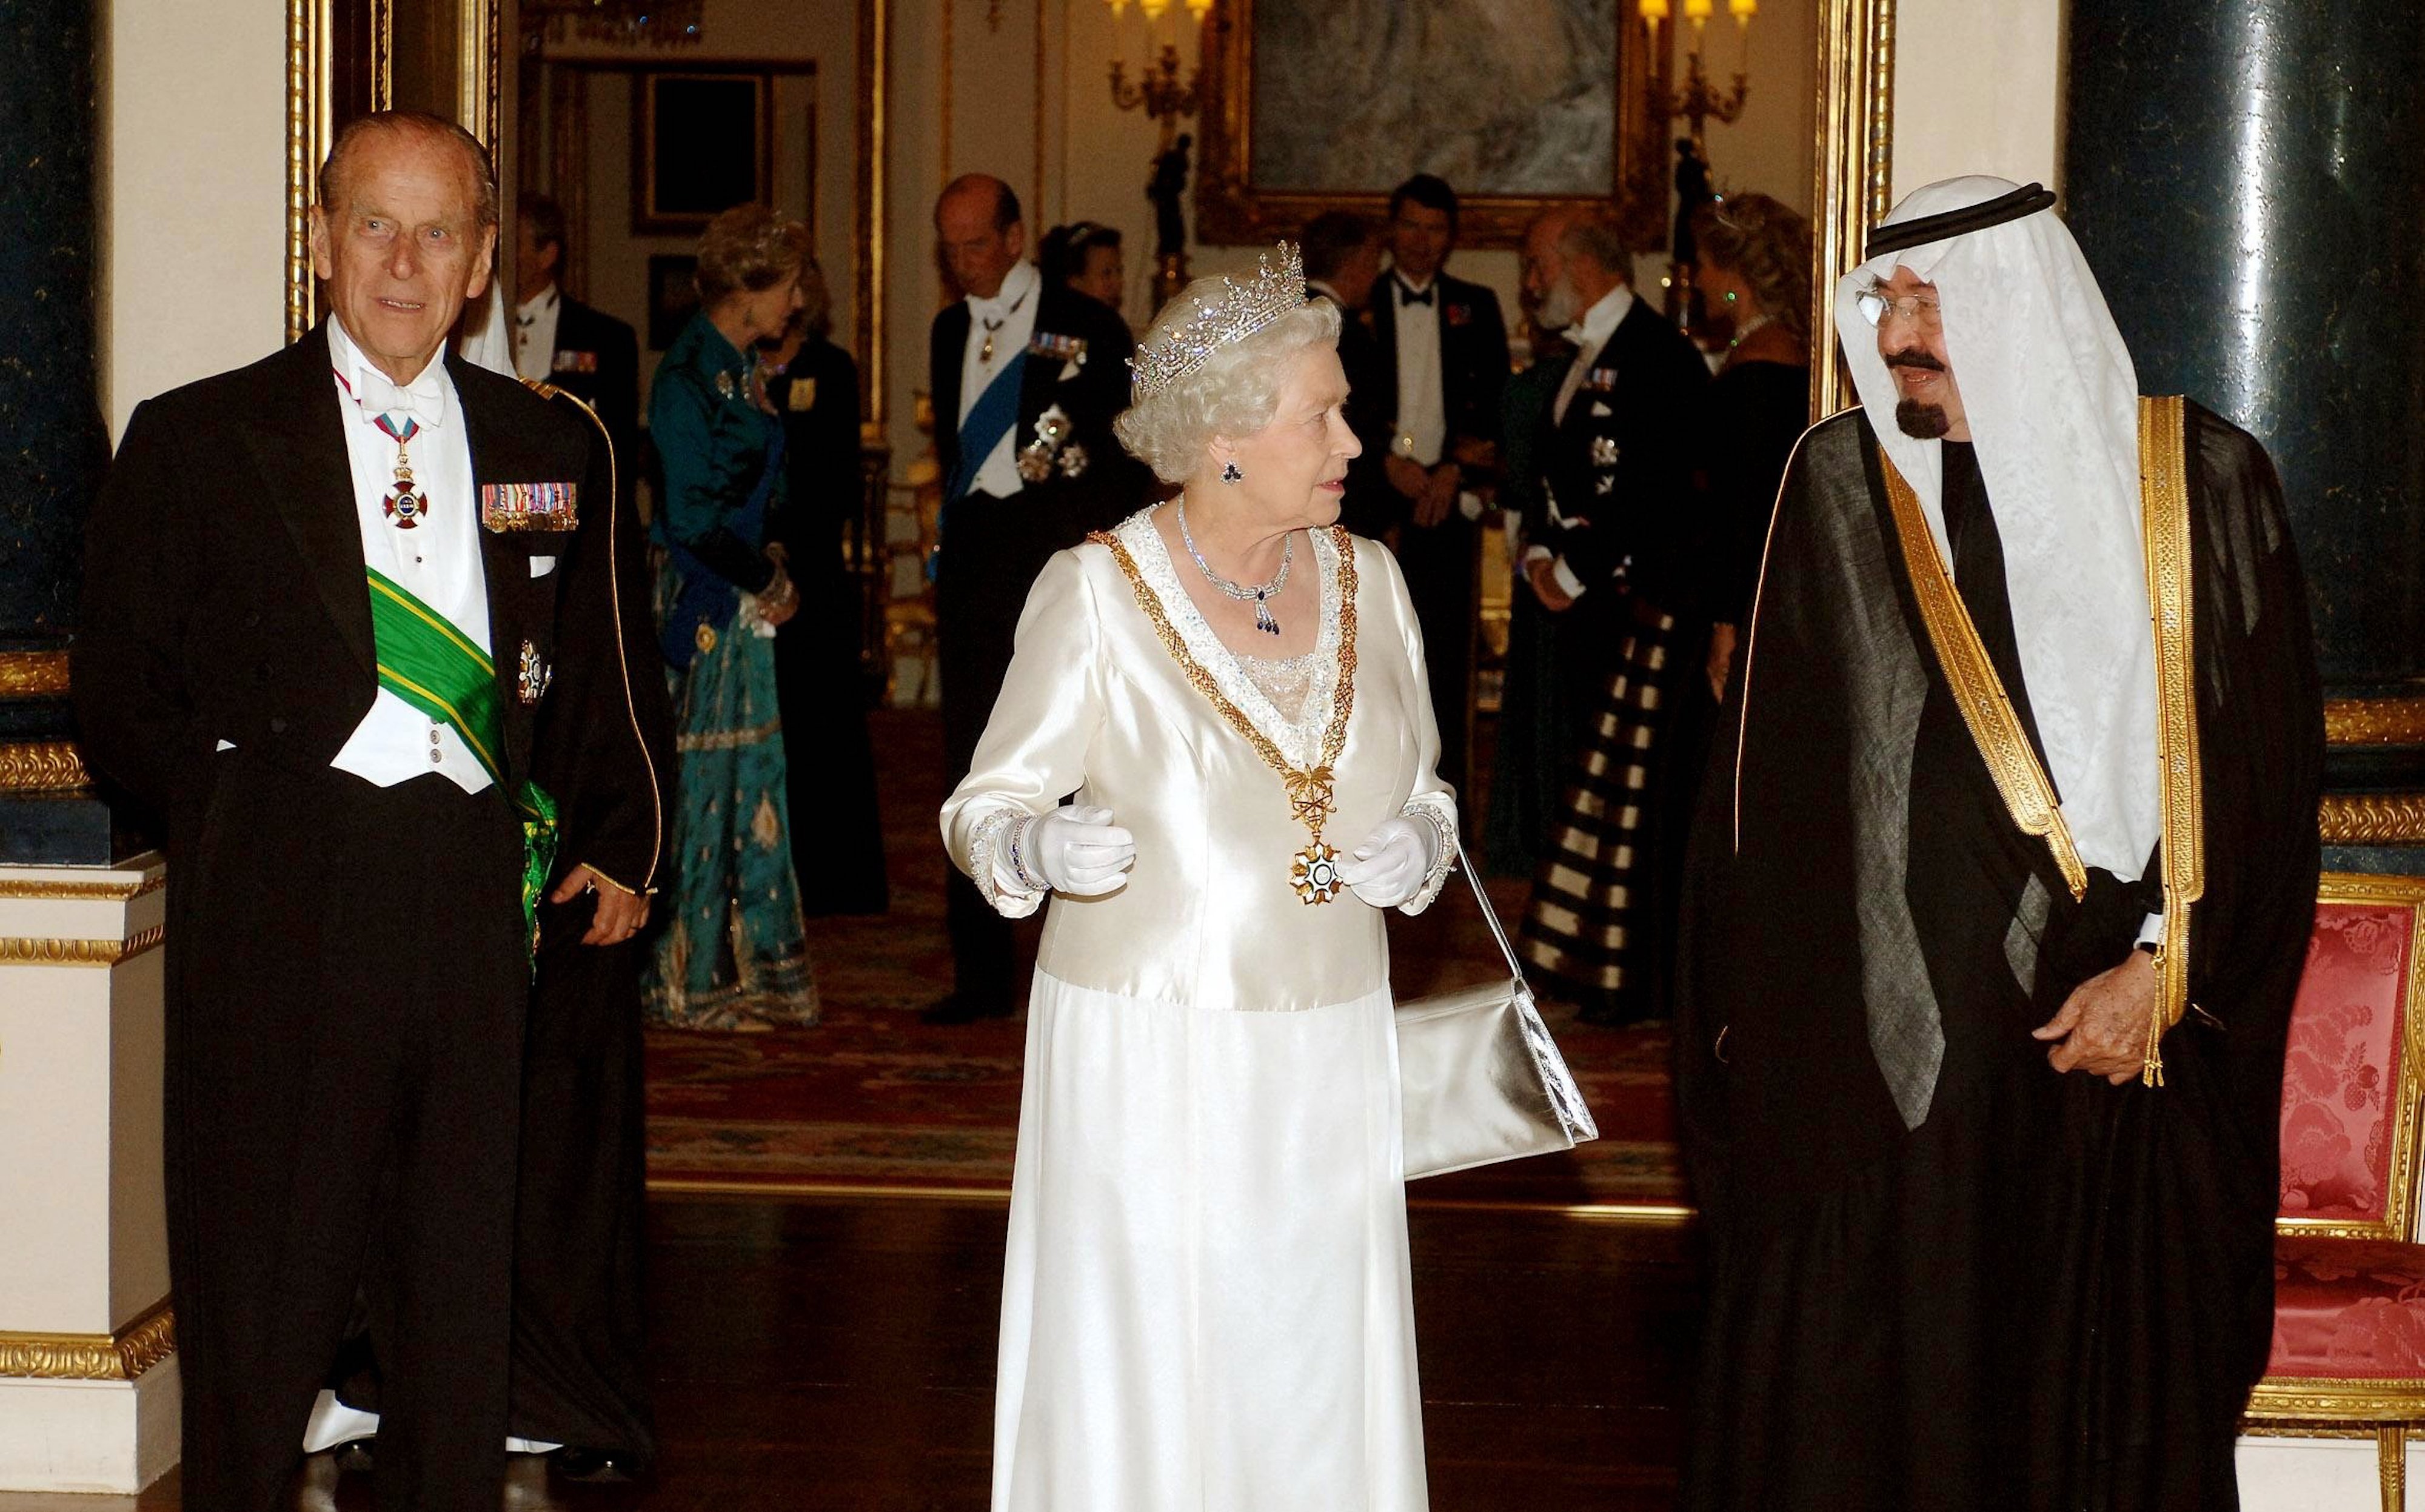 Le roi Abdallah d’Arabie saoudite s’entretient avec la reine Elizabeth II et le duc d’Édimbourg avant un banquet d’État au palais de Buckingham à Londres lors de la visite du monarque saoudien en 2007 (AFP)